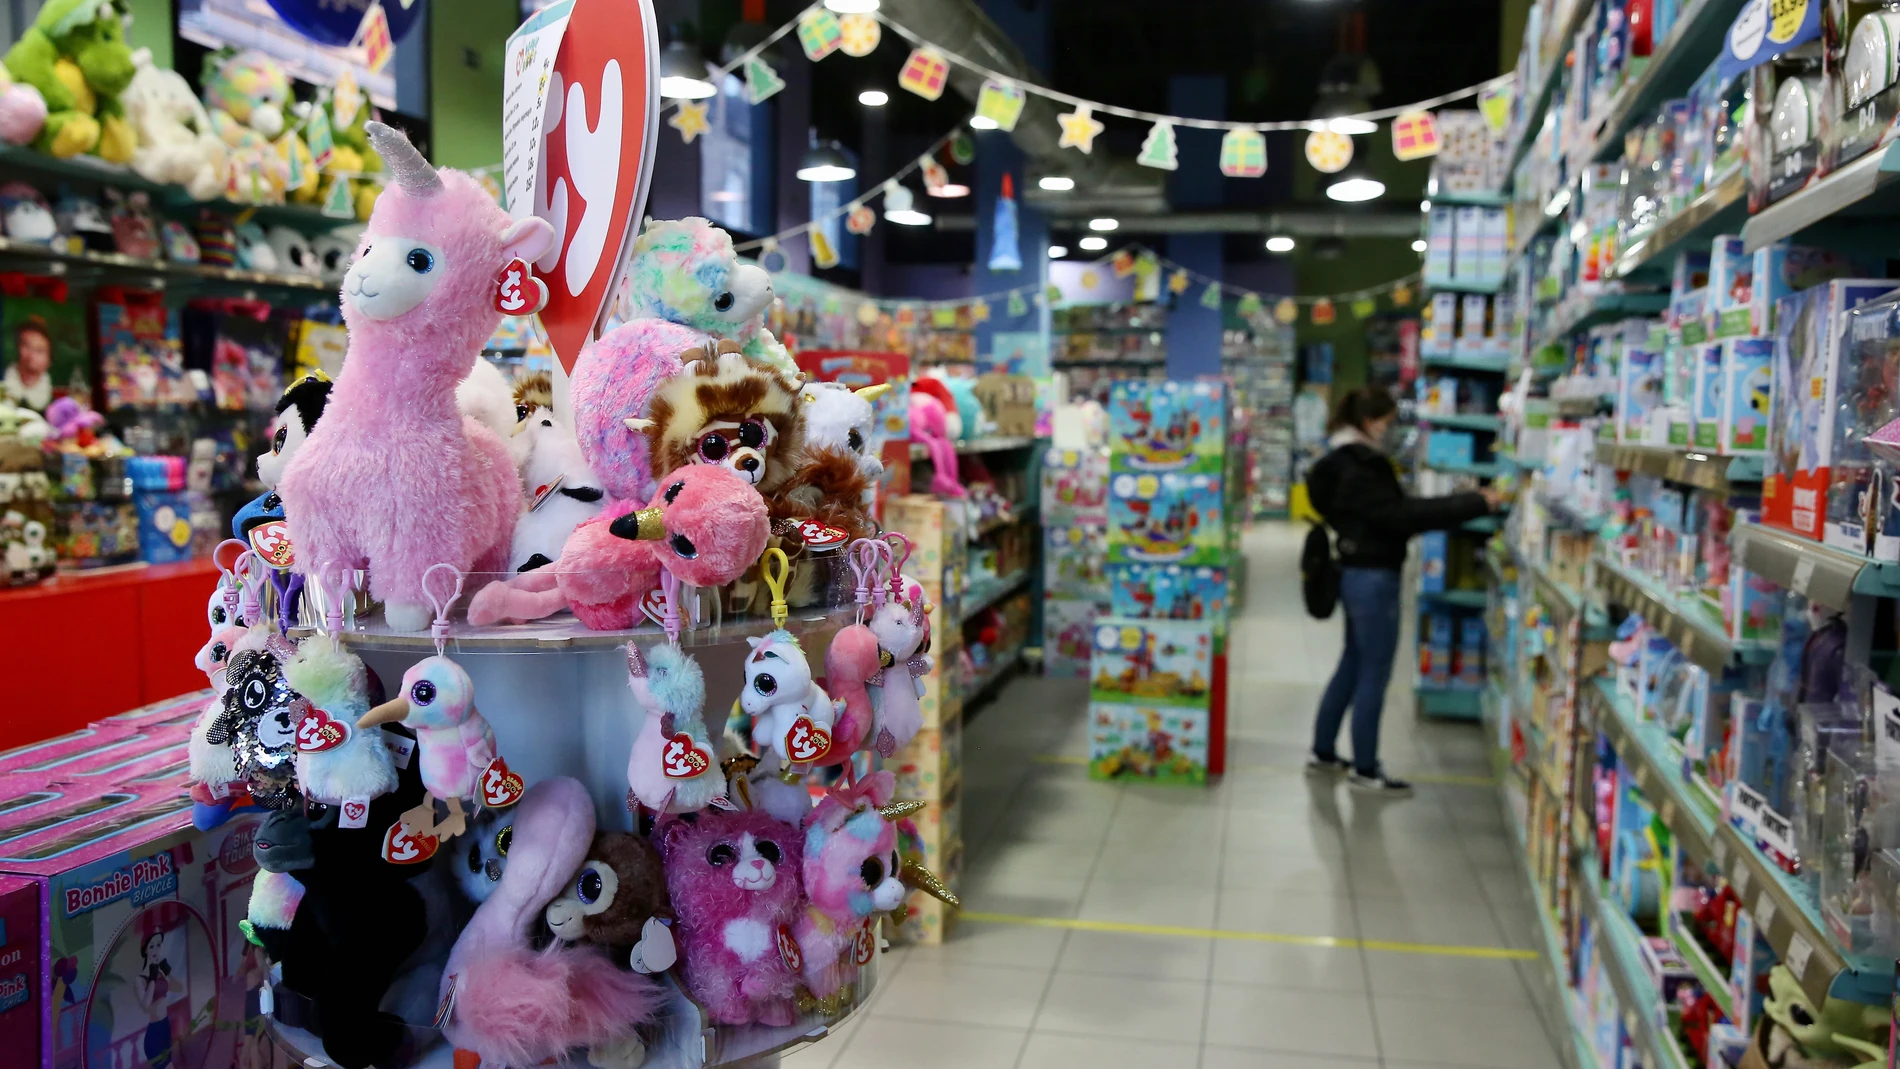 España es reconocido como una “potencia mundial” en el sector juguetero